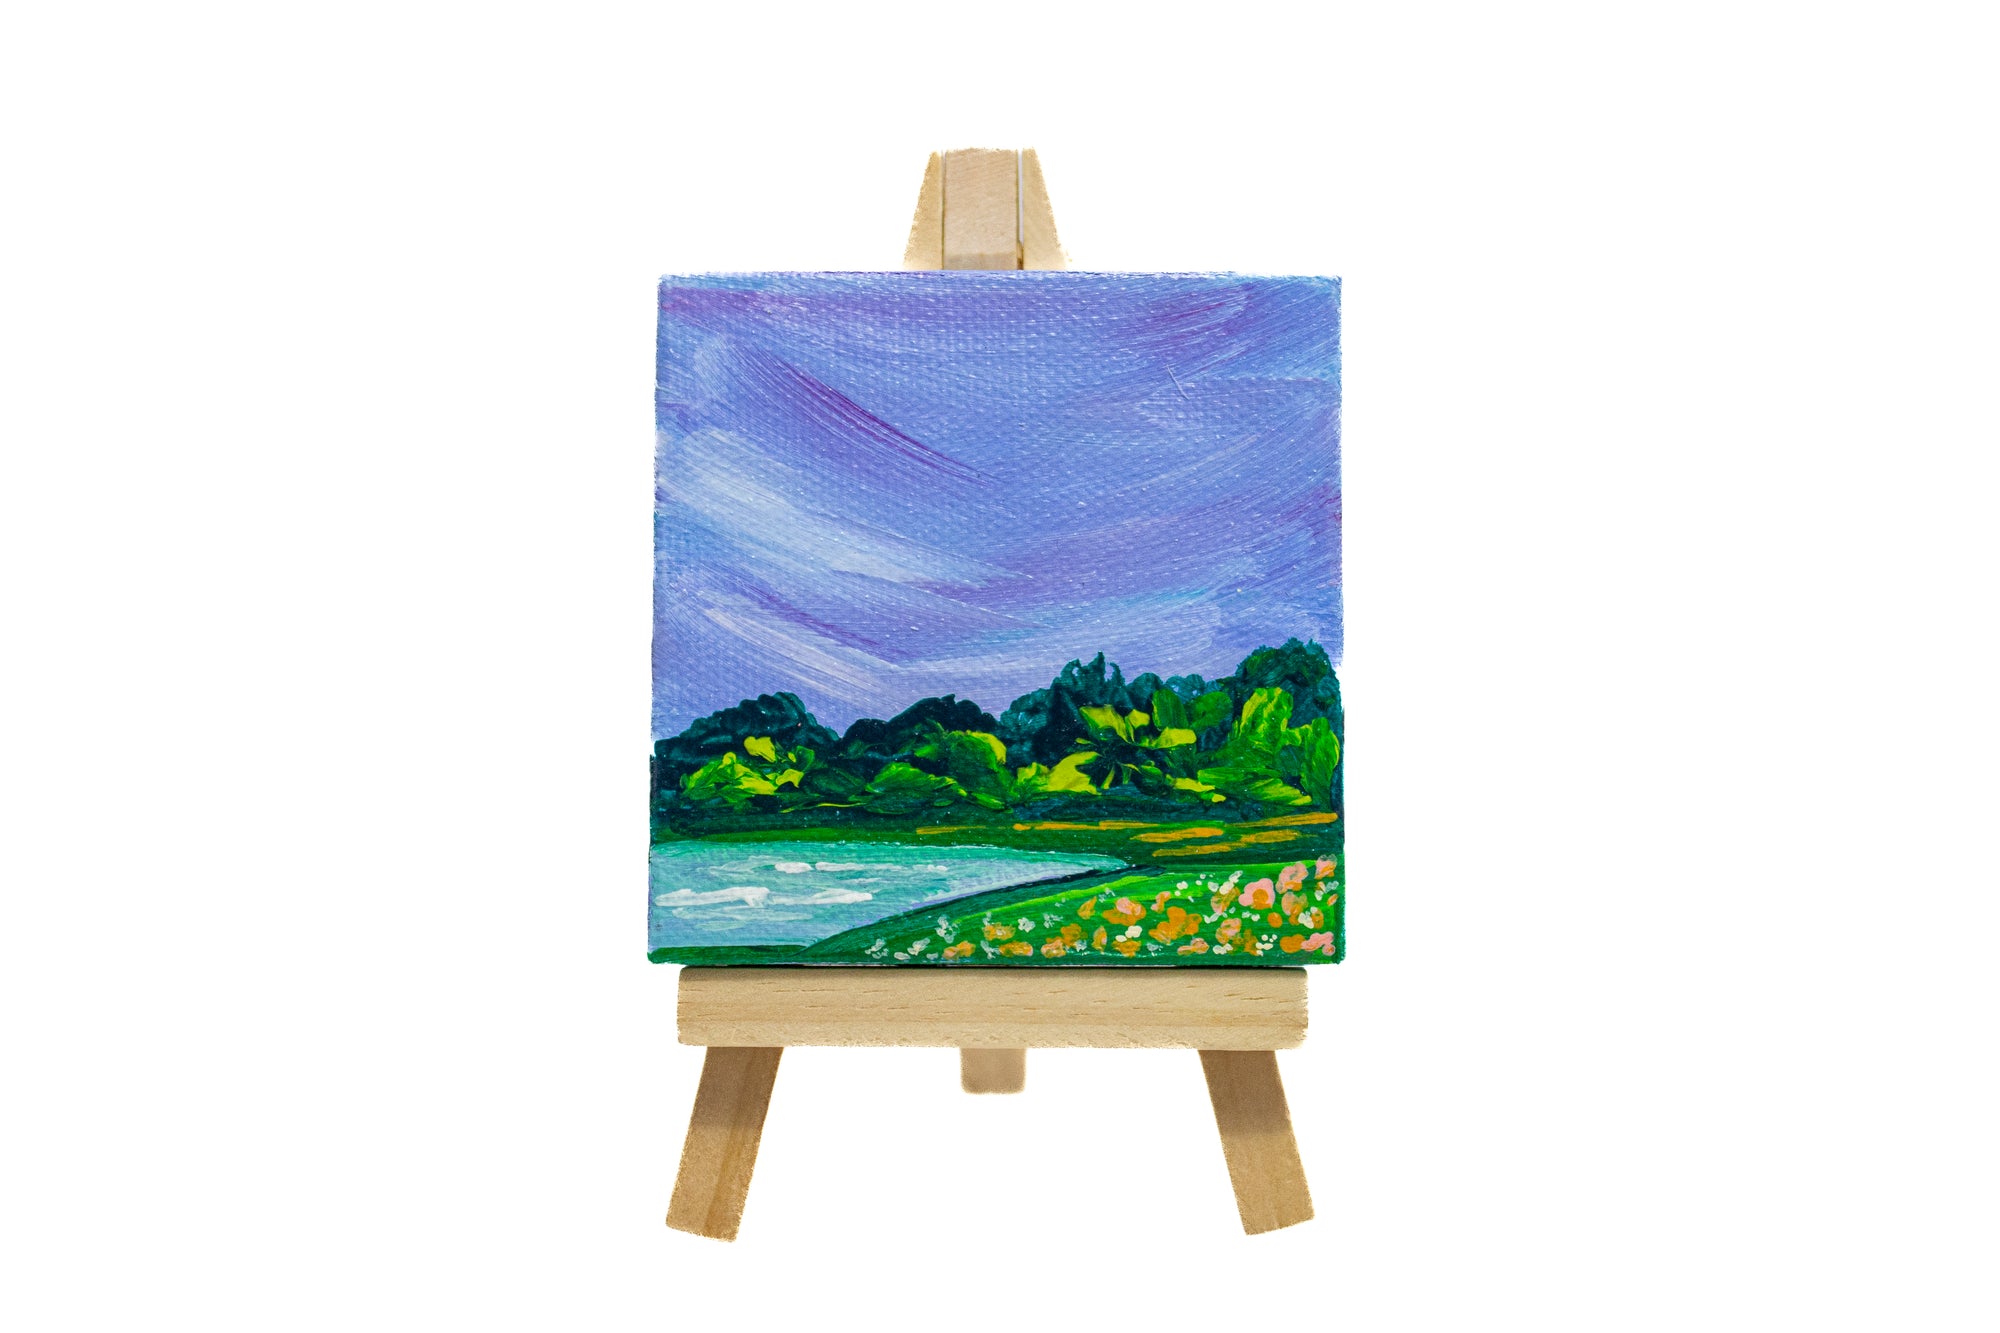 3x3 Mini Canvas w/ Easel (Landscape)